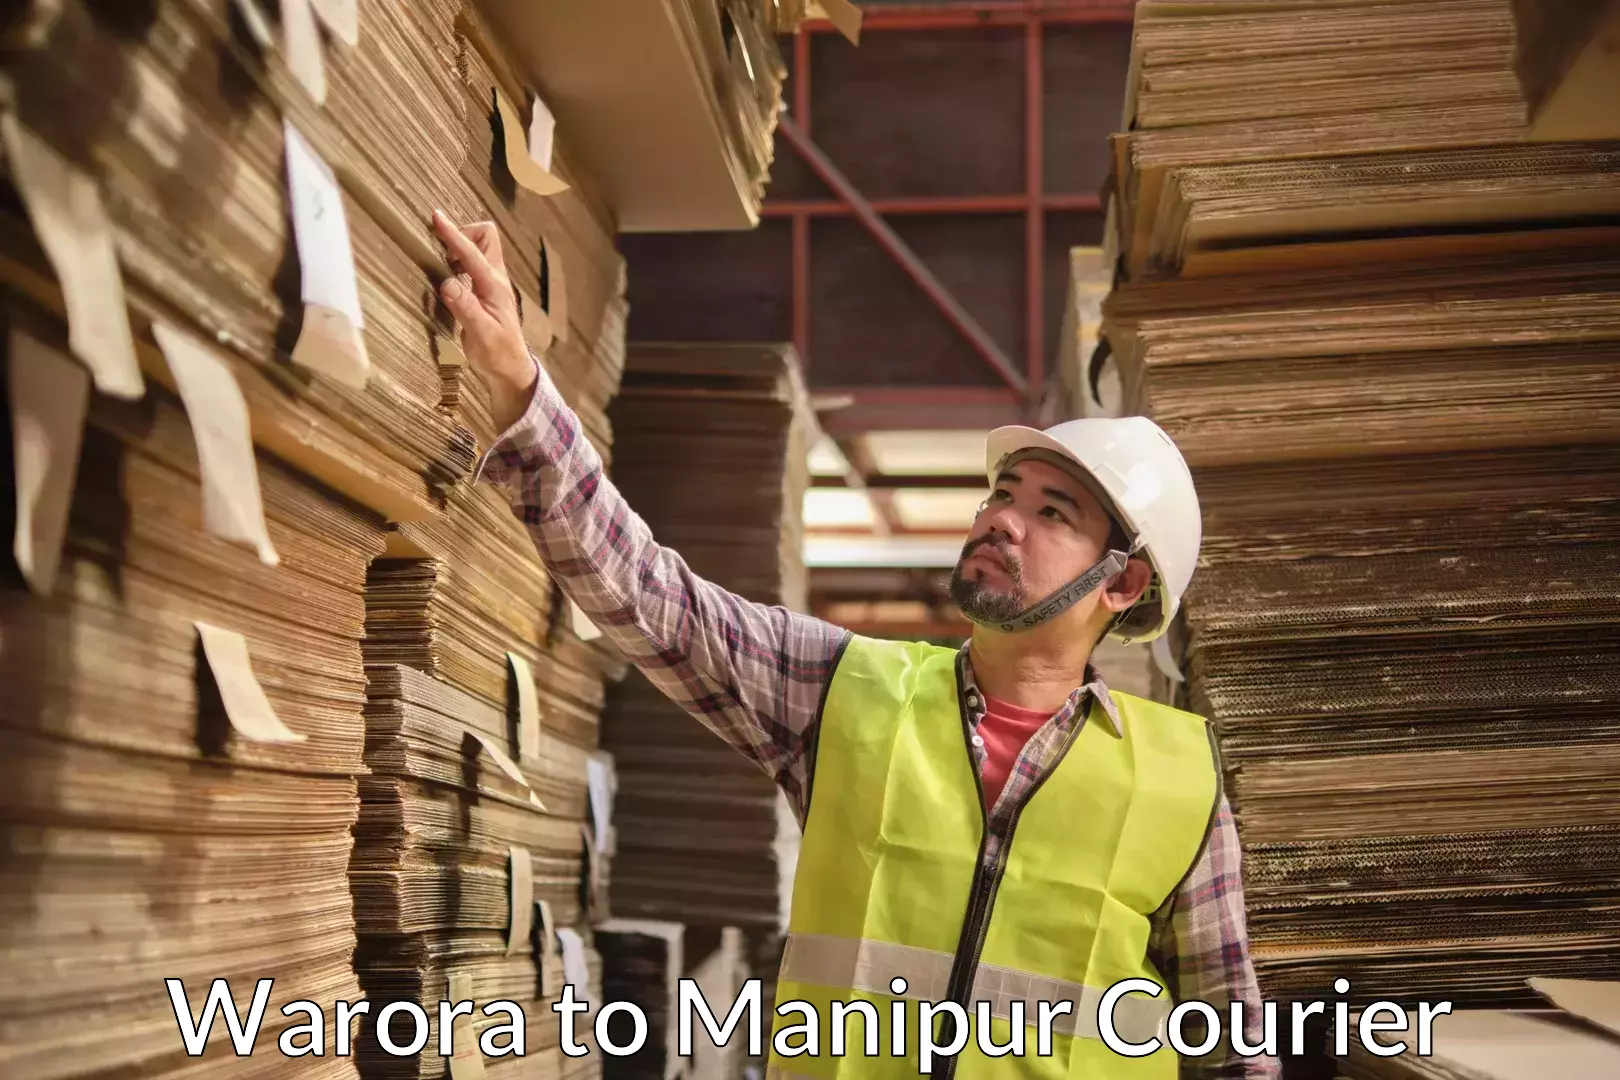 Furniture moving experts Warora to Manipur